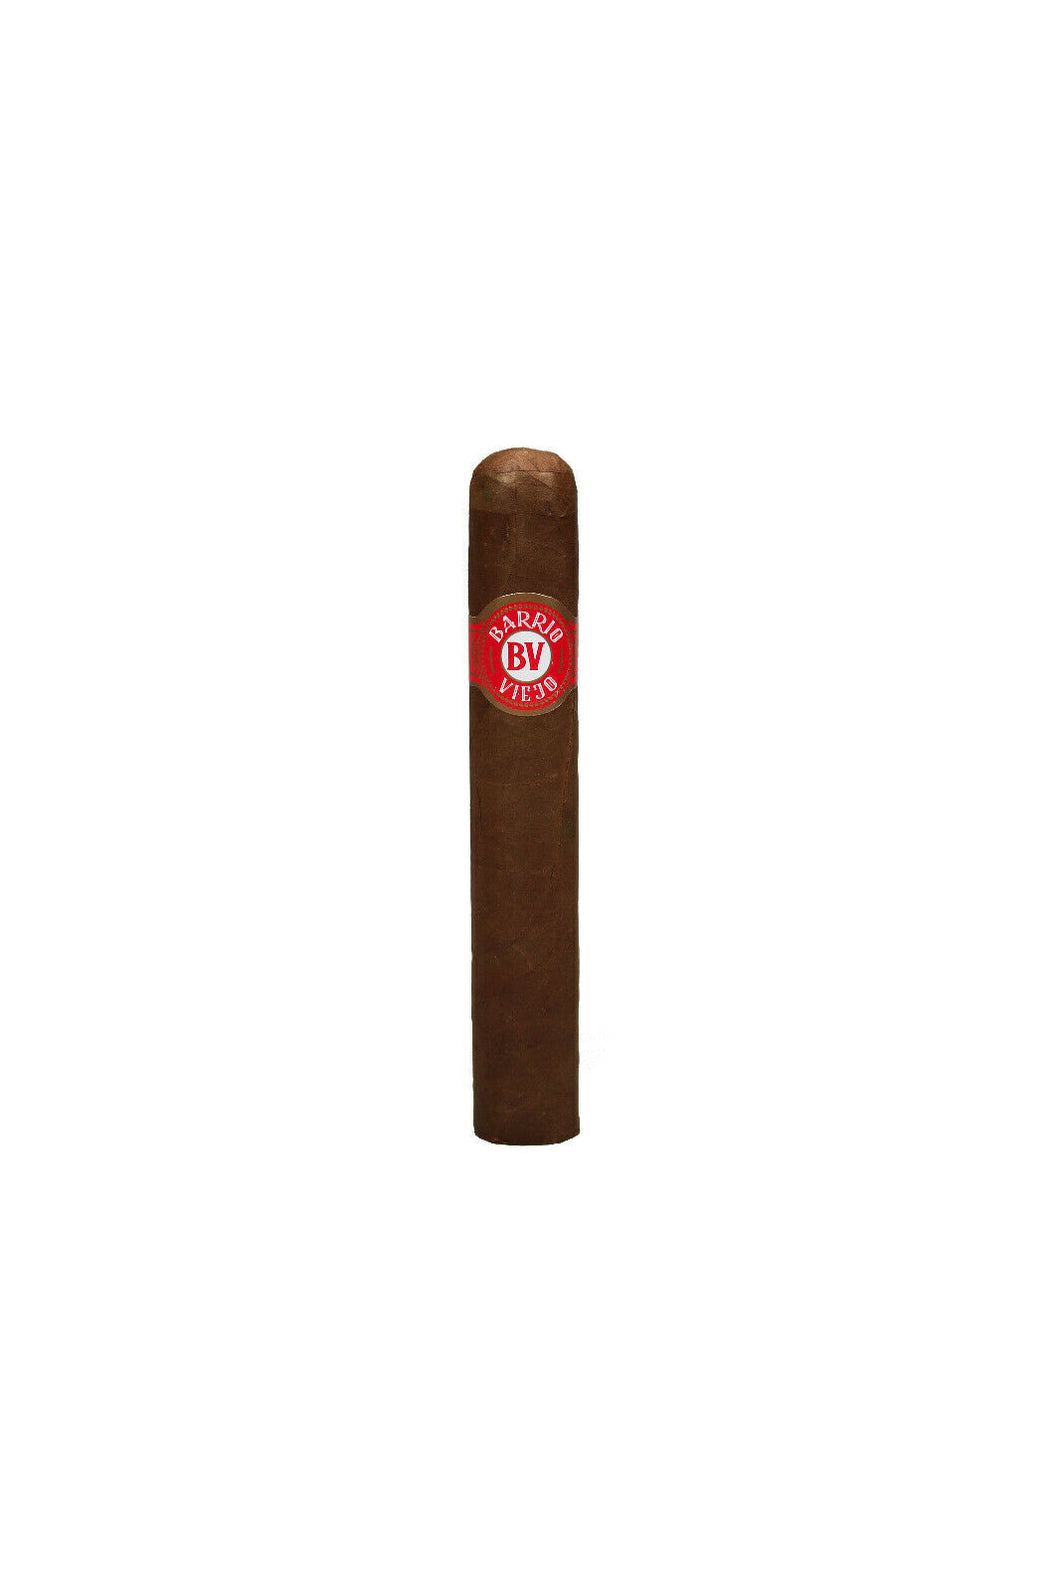 Barrio Viejo - Zigarren - Double Robusto - Honduras: wählen Sie: 5 oder 10 Stück